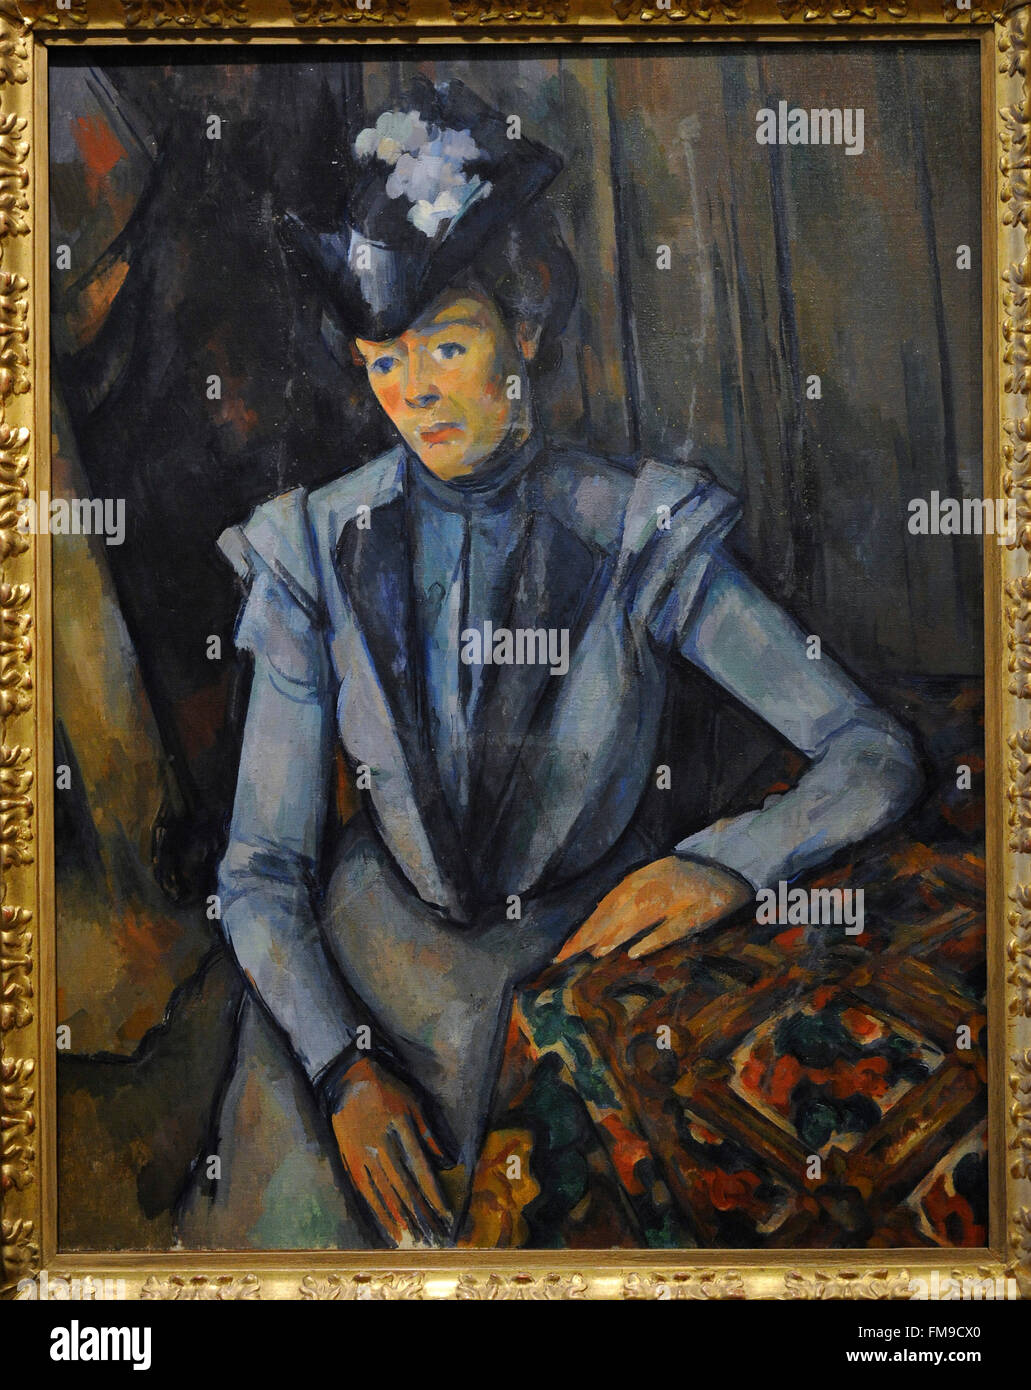 Paul Cézanne (1839-1906). Französischer Maler. Dame in blau. Ca. 1900. Öl auf Leinwand. Die Eremitage. Sankt Petersburg. Russland. Stockfoto